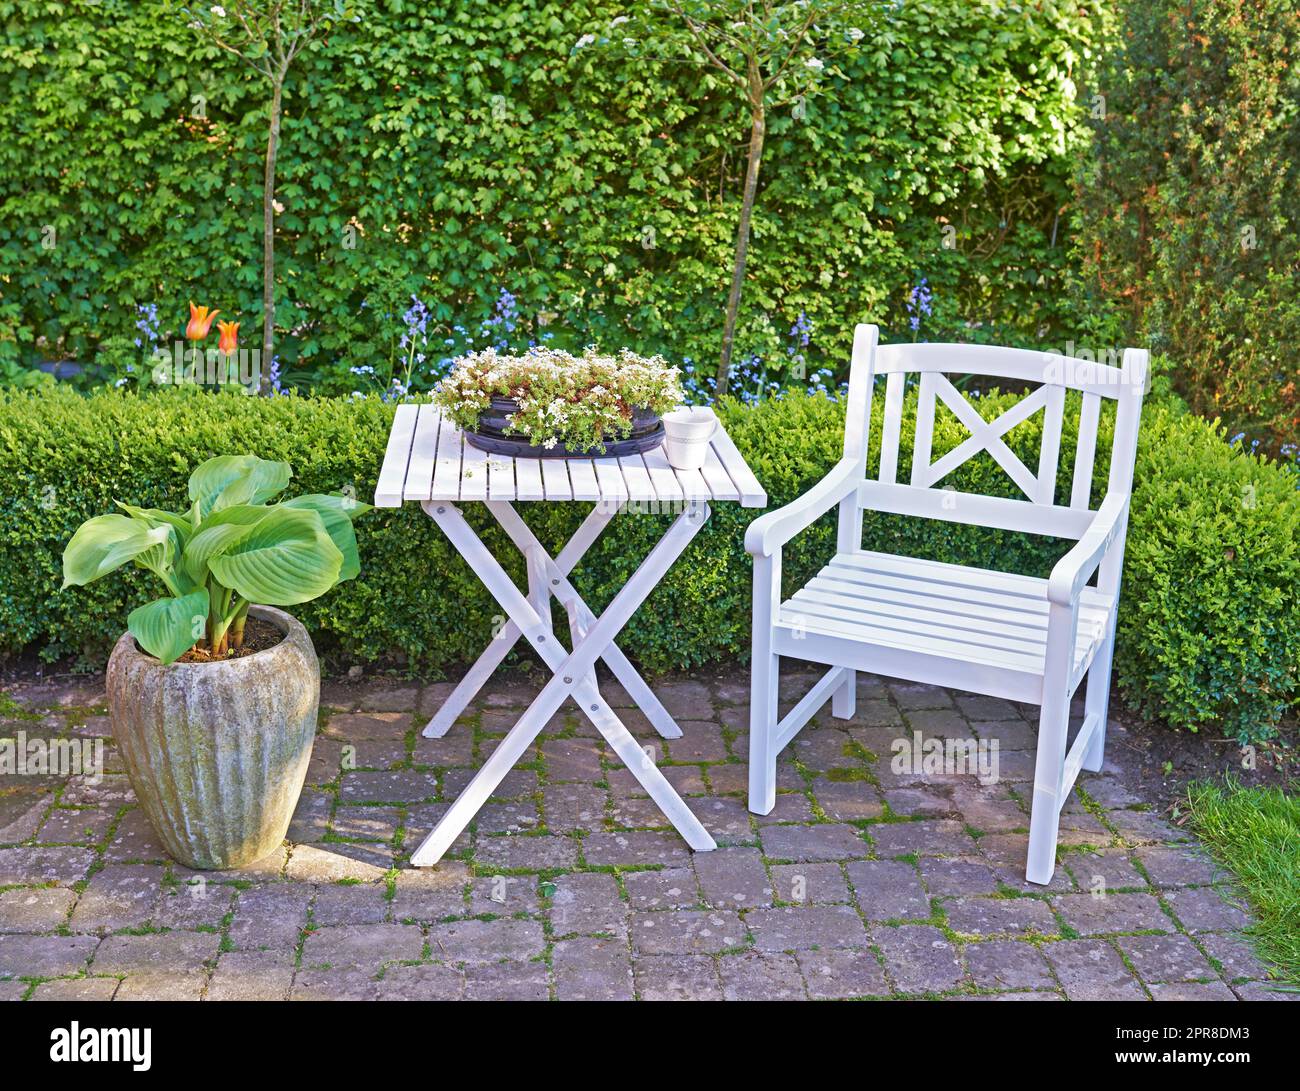 Chaise et table en bois blanc dans un jardin verdoyant avec plantes en fleurs et espace d'imitation. Paysage tranquille pour se détendre et profiter d'un pique-nique confortable en été. Patio extérieur dans une cour calme et isolée Banque D'Images